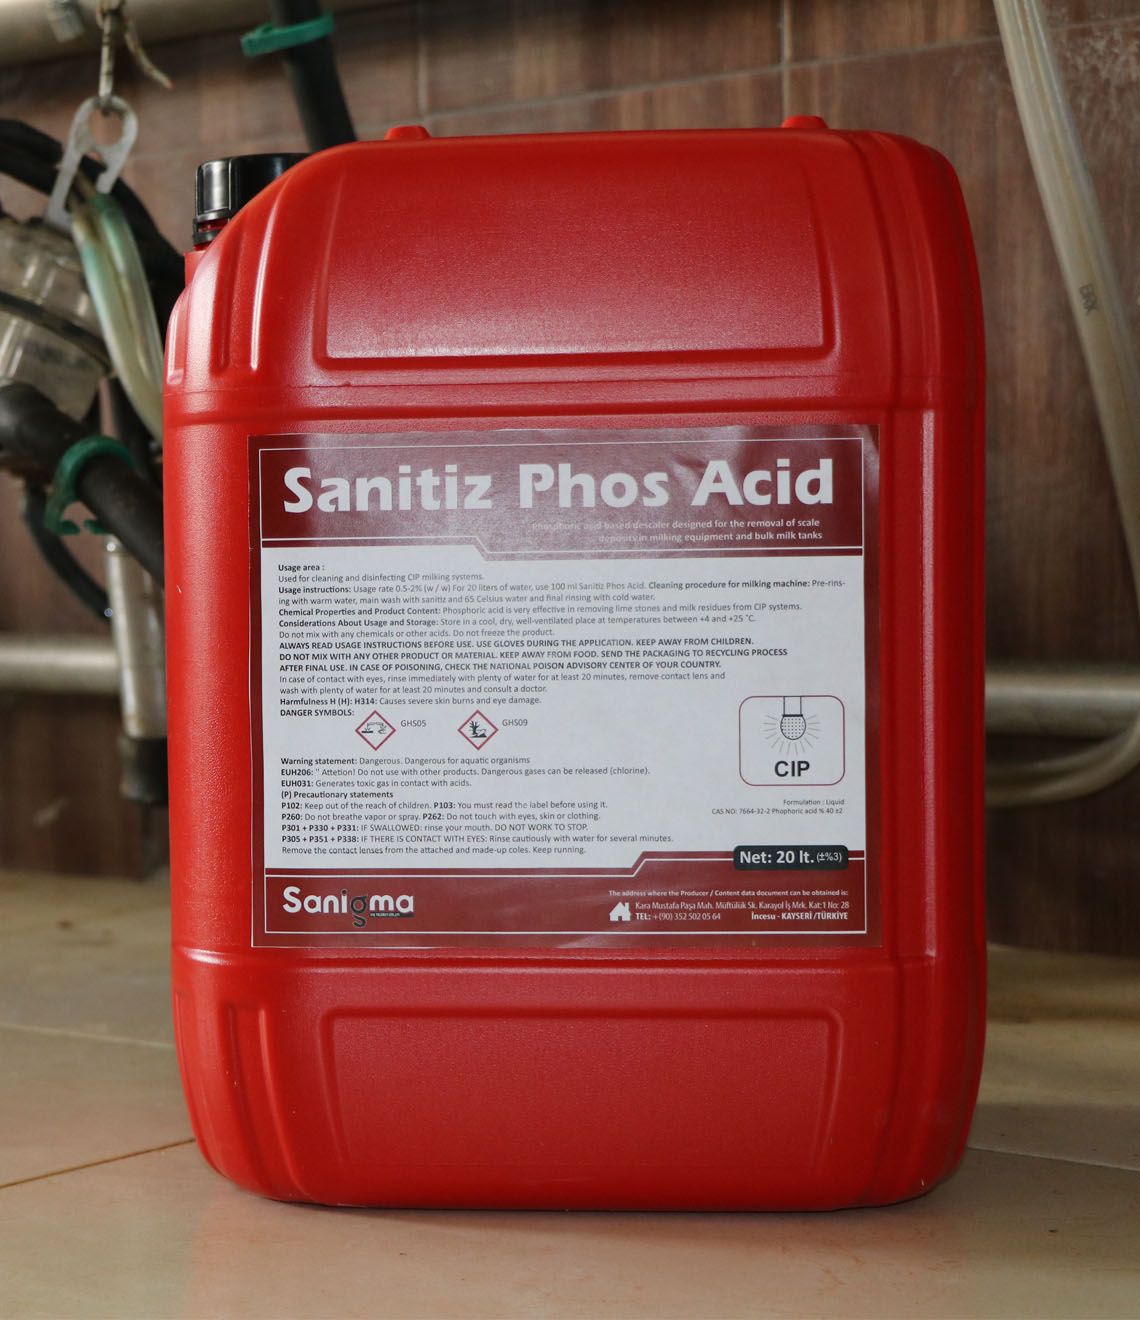 Sanitiz Phos Acid